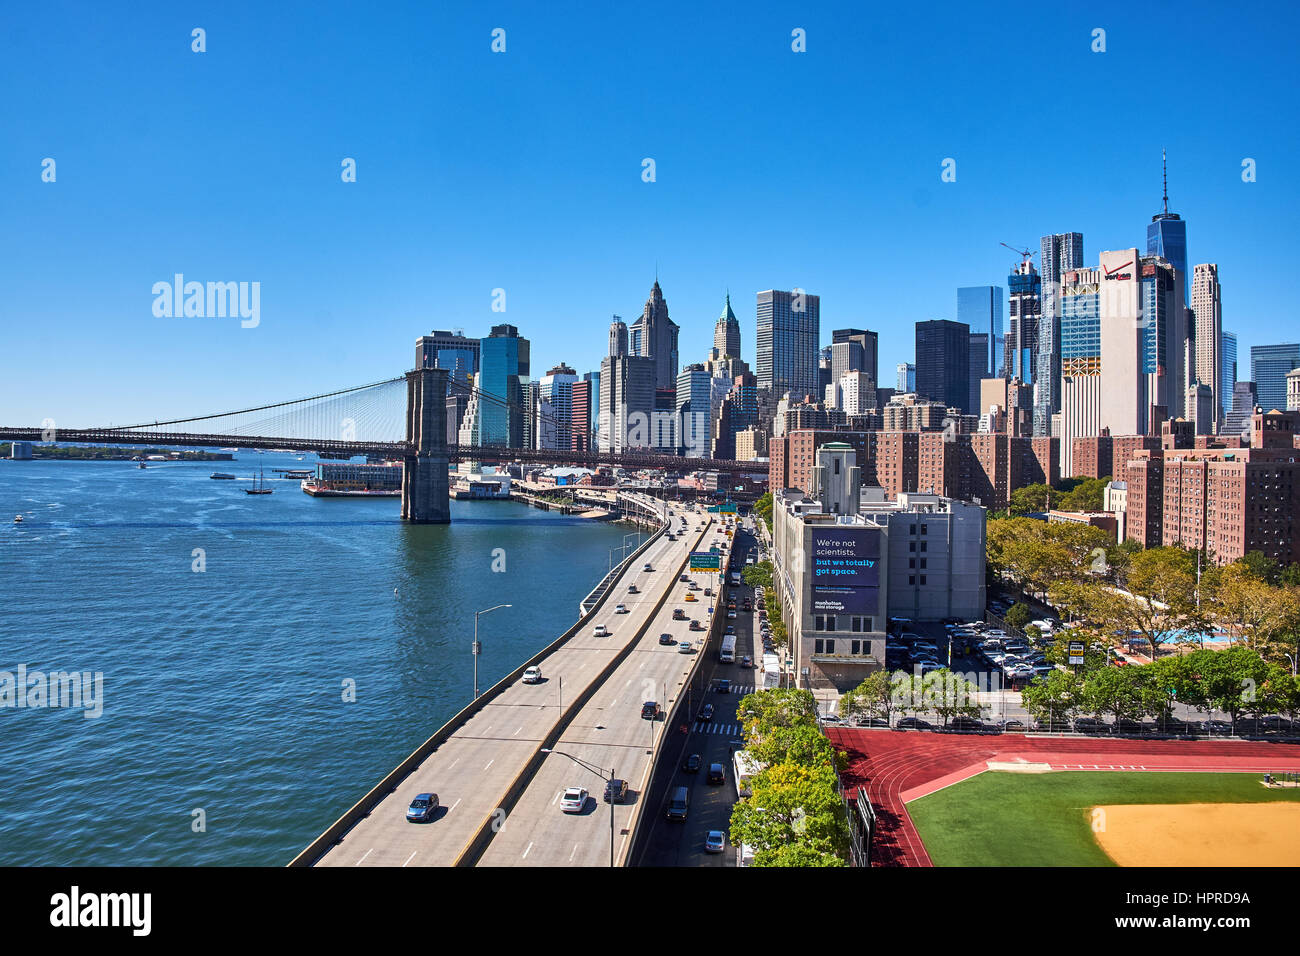 La CIUDAD DE NUEVA YORK - 25 de septiembre: una mirada hacia abajo en la costa este de Manhattan con el FDR Drive y el East River en la frontera Foto de stock